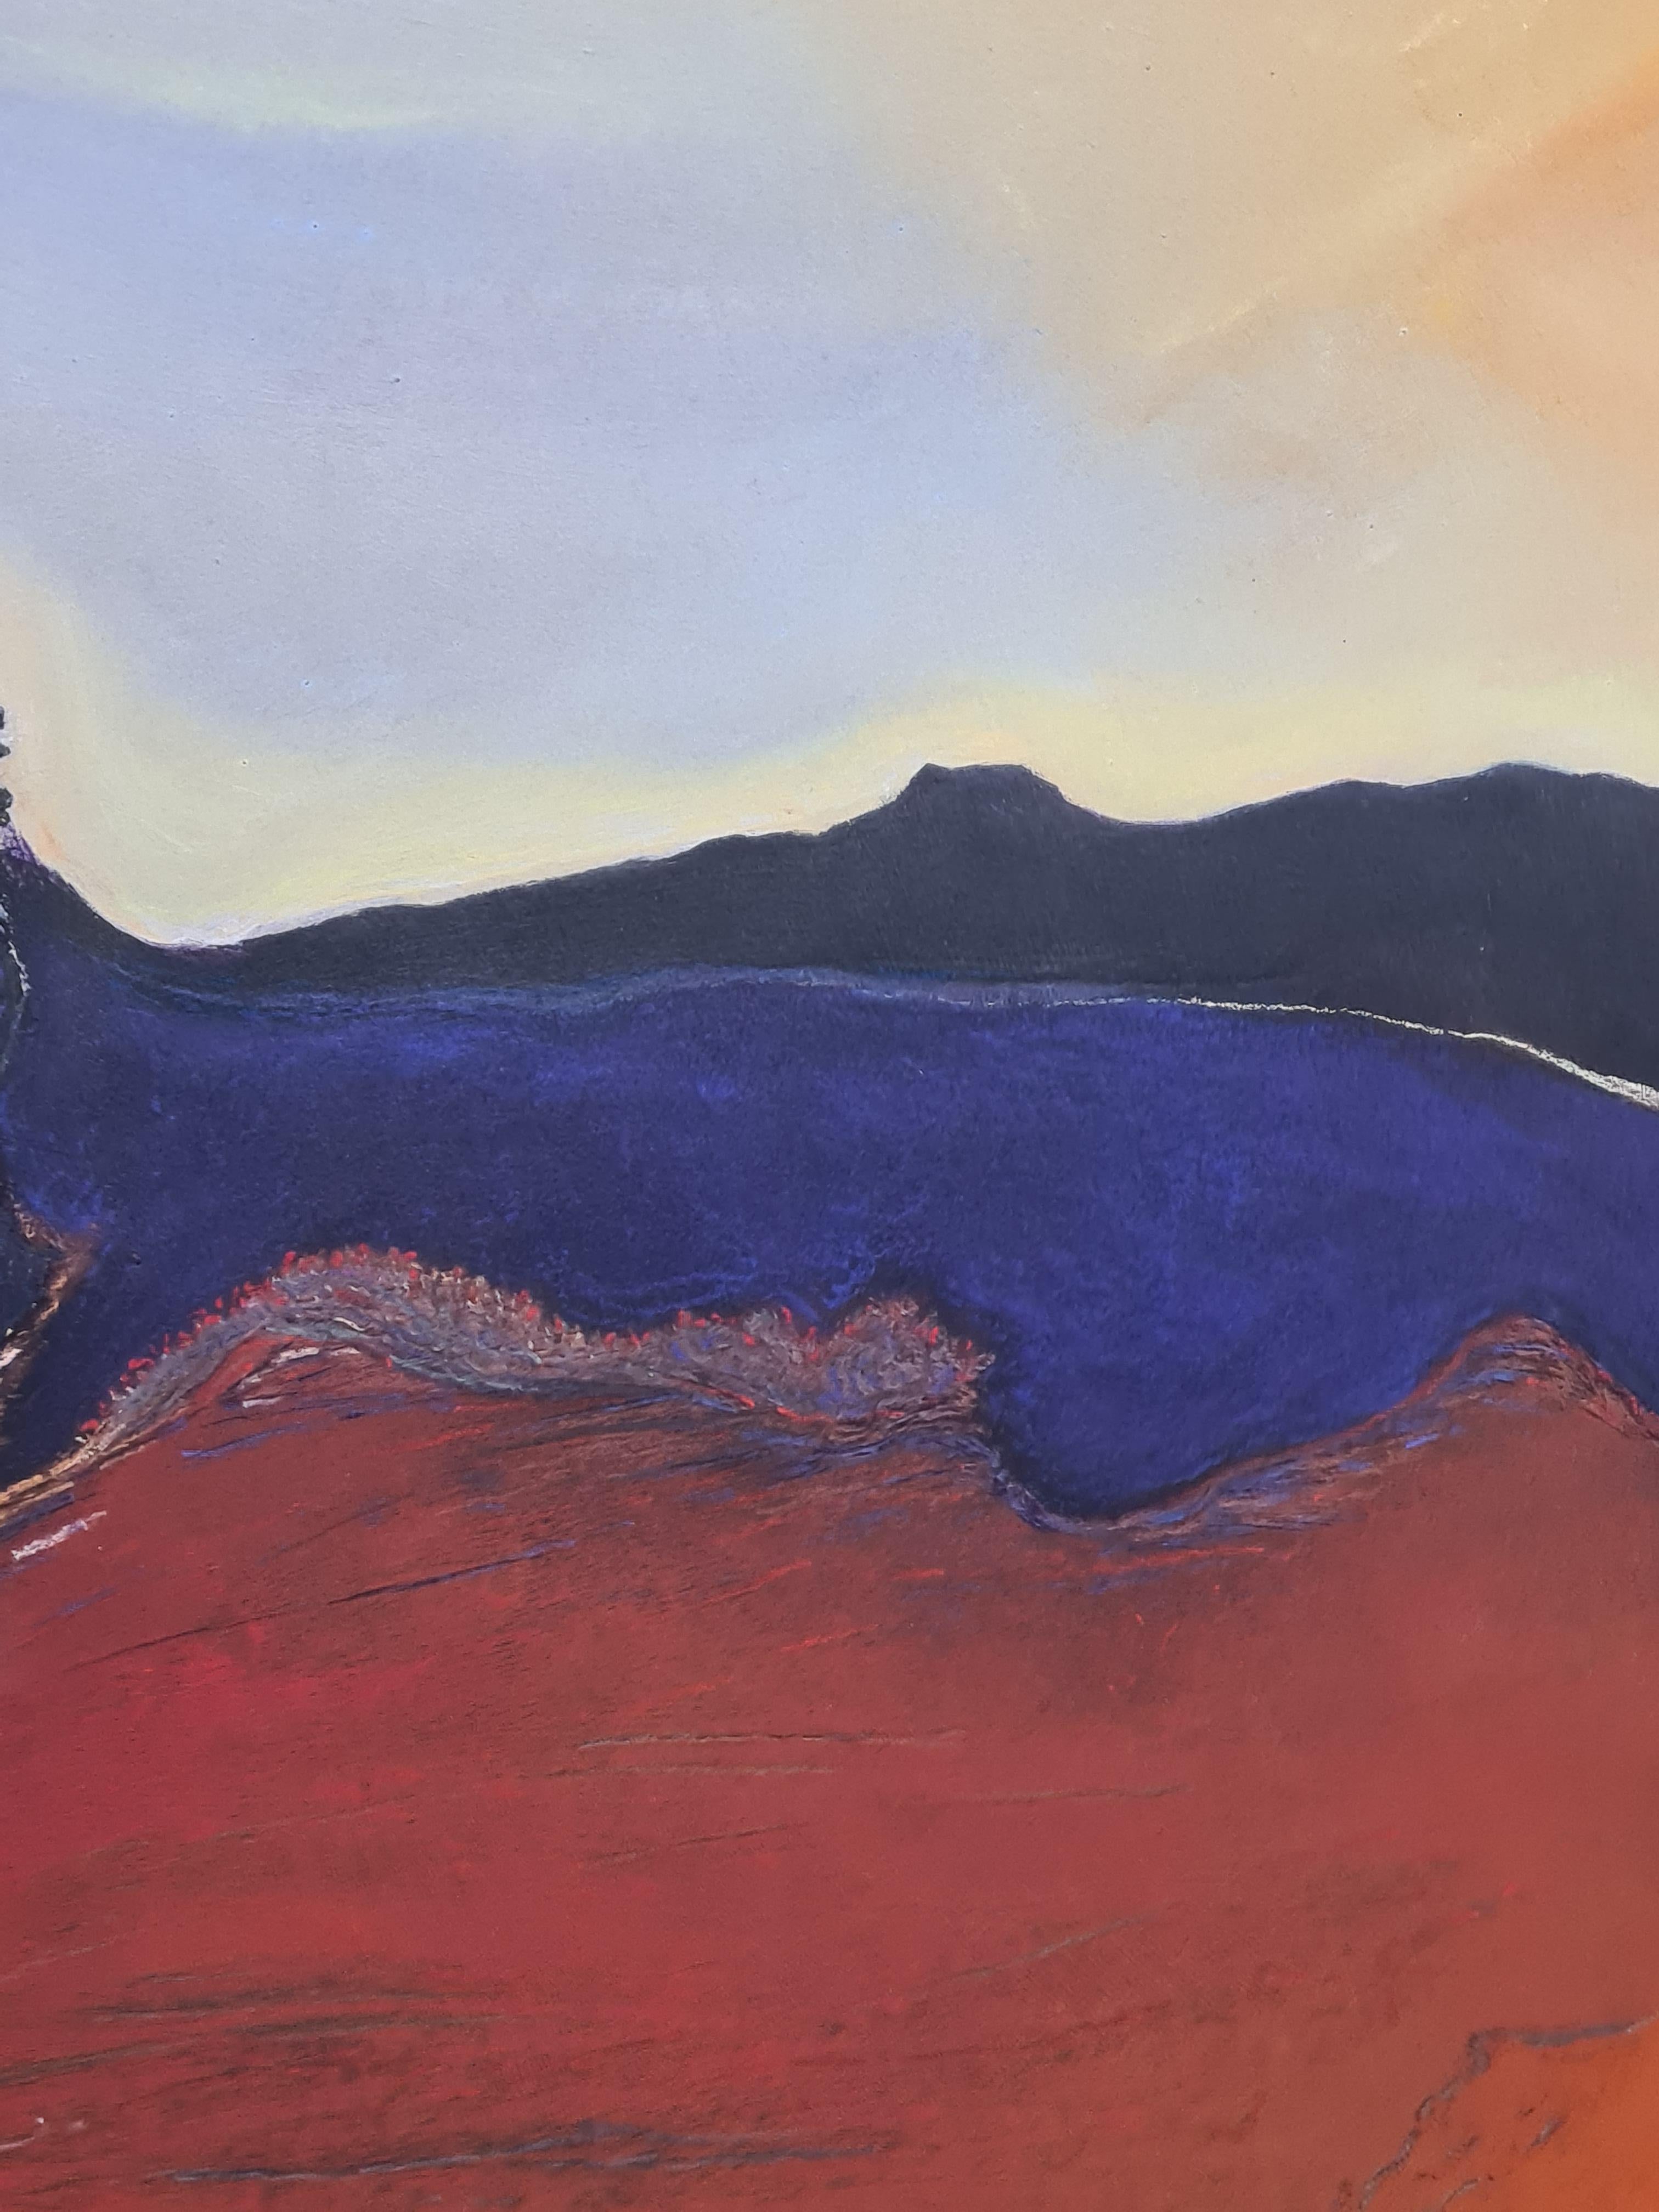 Zeitgenössisches fauvistisch-impressionistisches Pastell einer farbenfrohen Landschaft des belgischen Künstlers Francis Besson. Unten rechts signiert und in einem speziell angefertigten Rahmen aus weißem Holz und patiniert.

Ein prächtiges